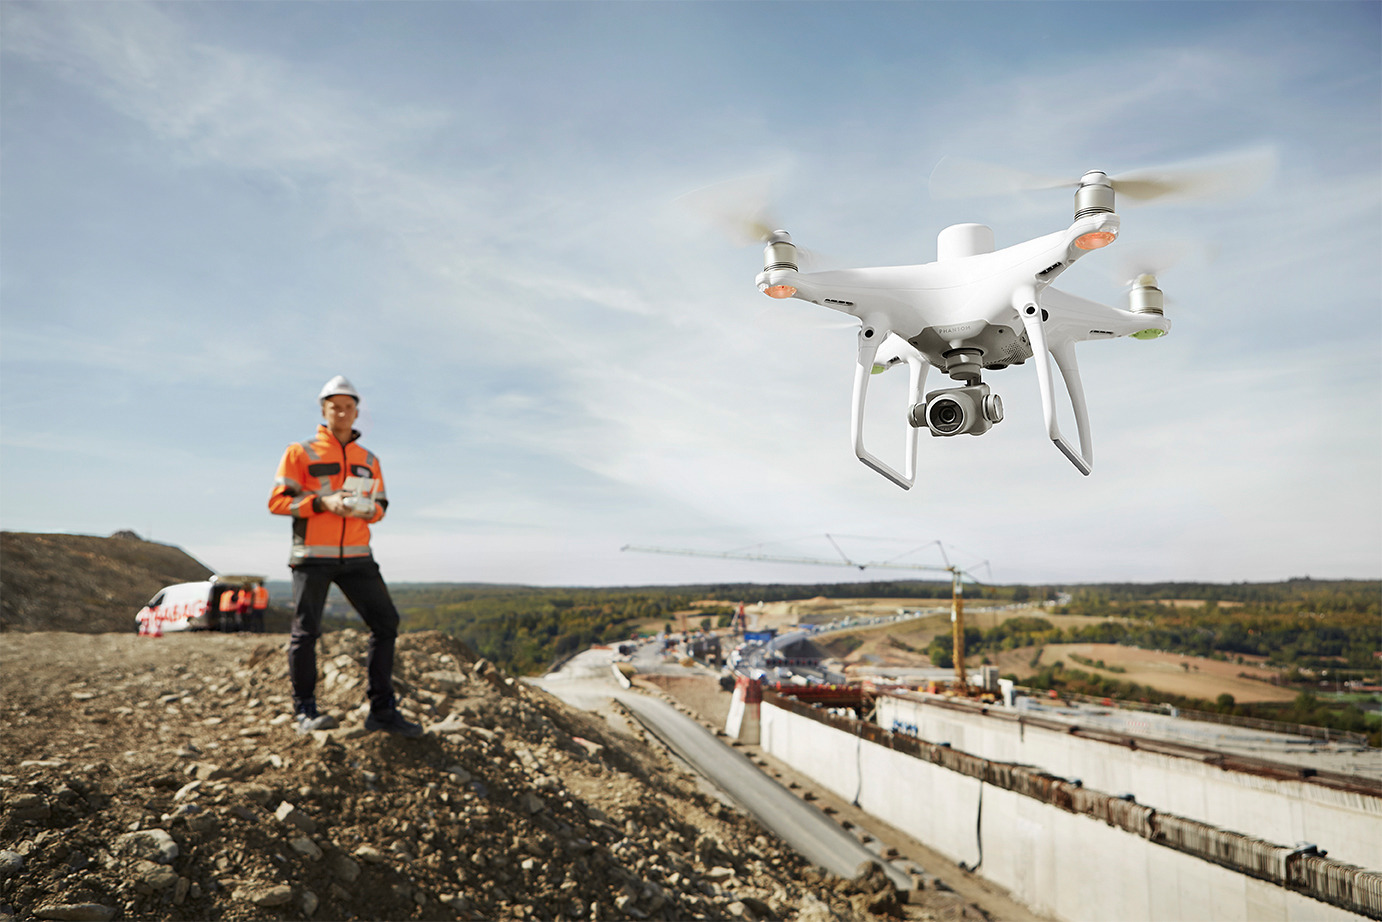 Pilot using the P4 RTK drone to survey a landscape